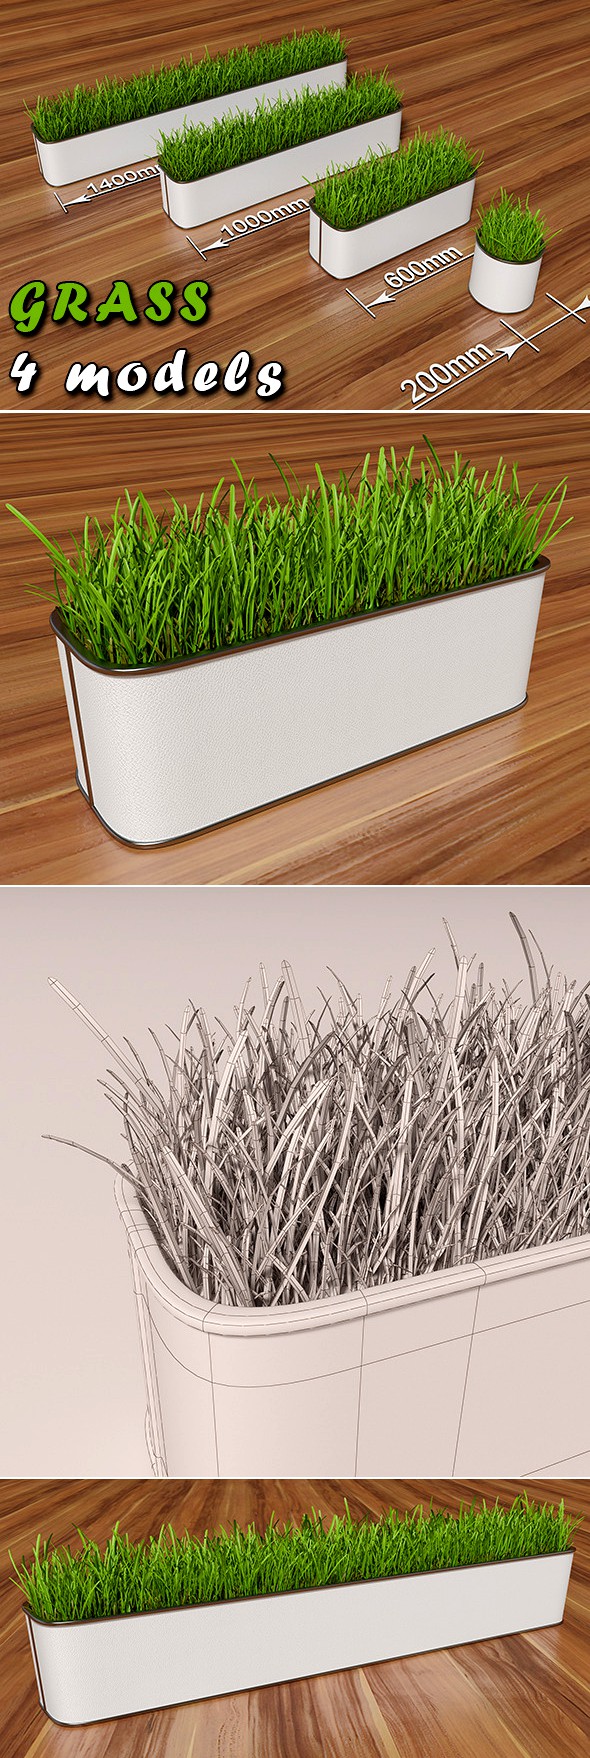 Decorative grass in a pot